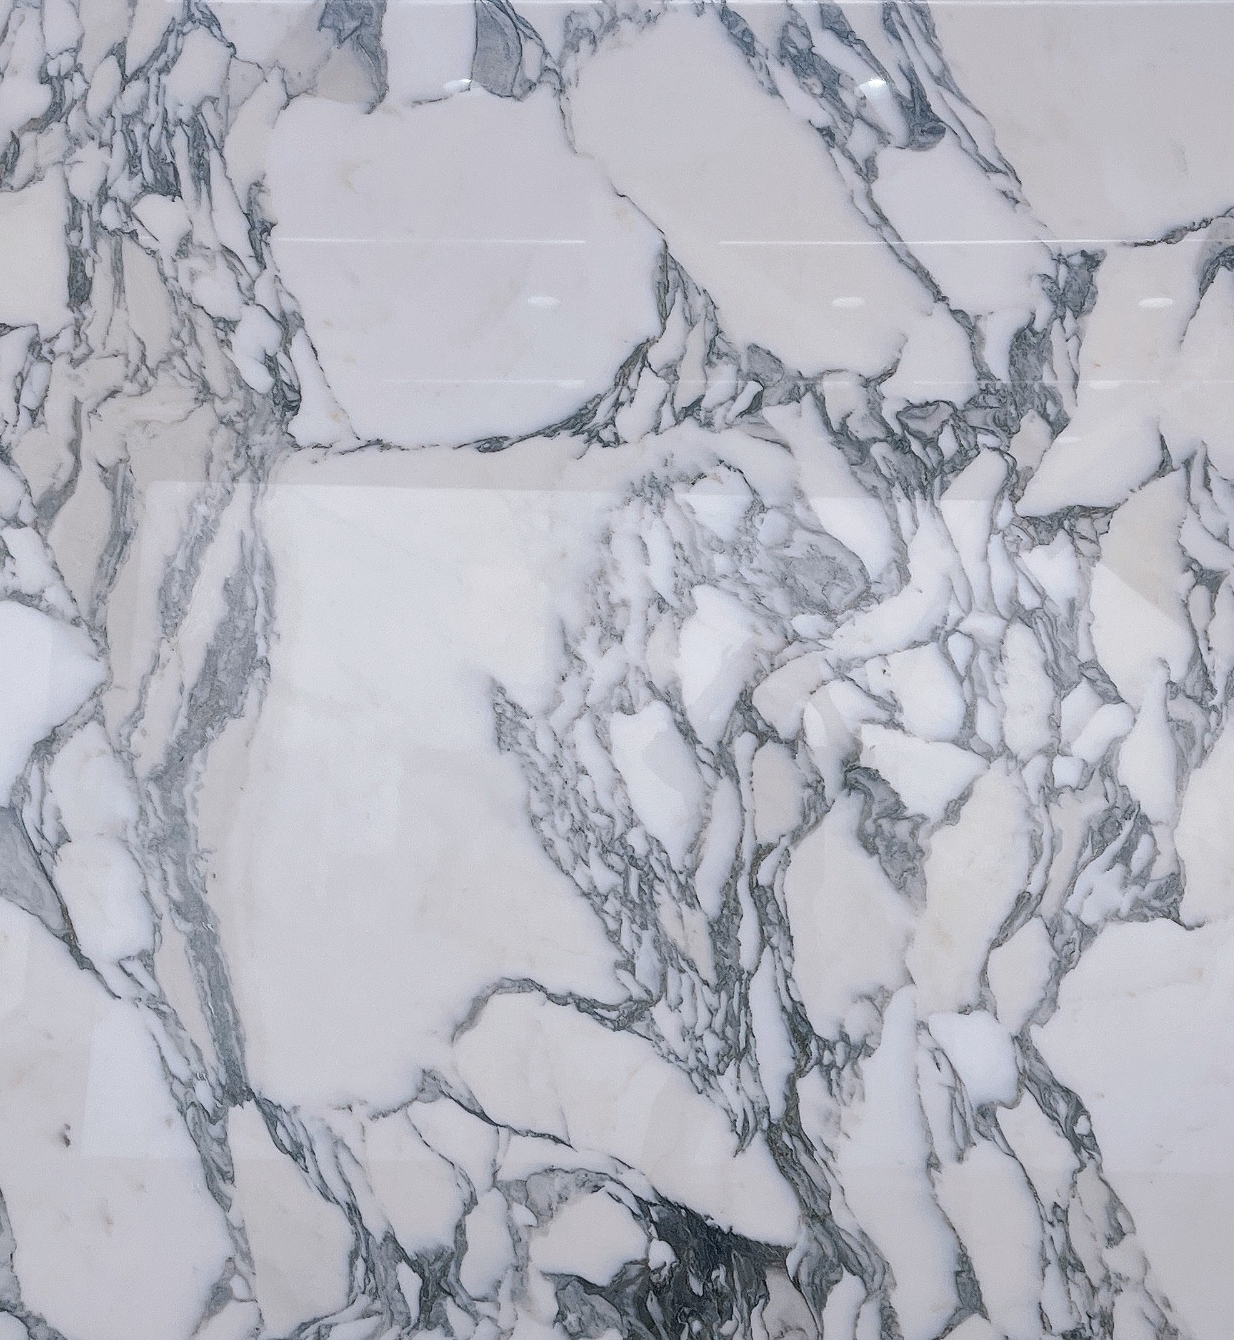 Italian Arabescato-Ib qho zoo nkauj thiab Romantic Marble rau High-End Engineering Applications